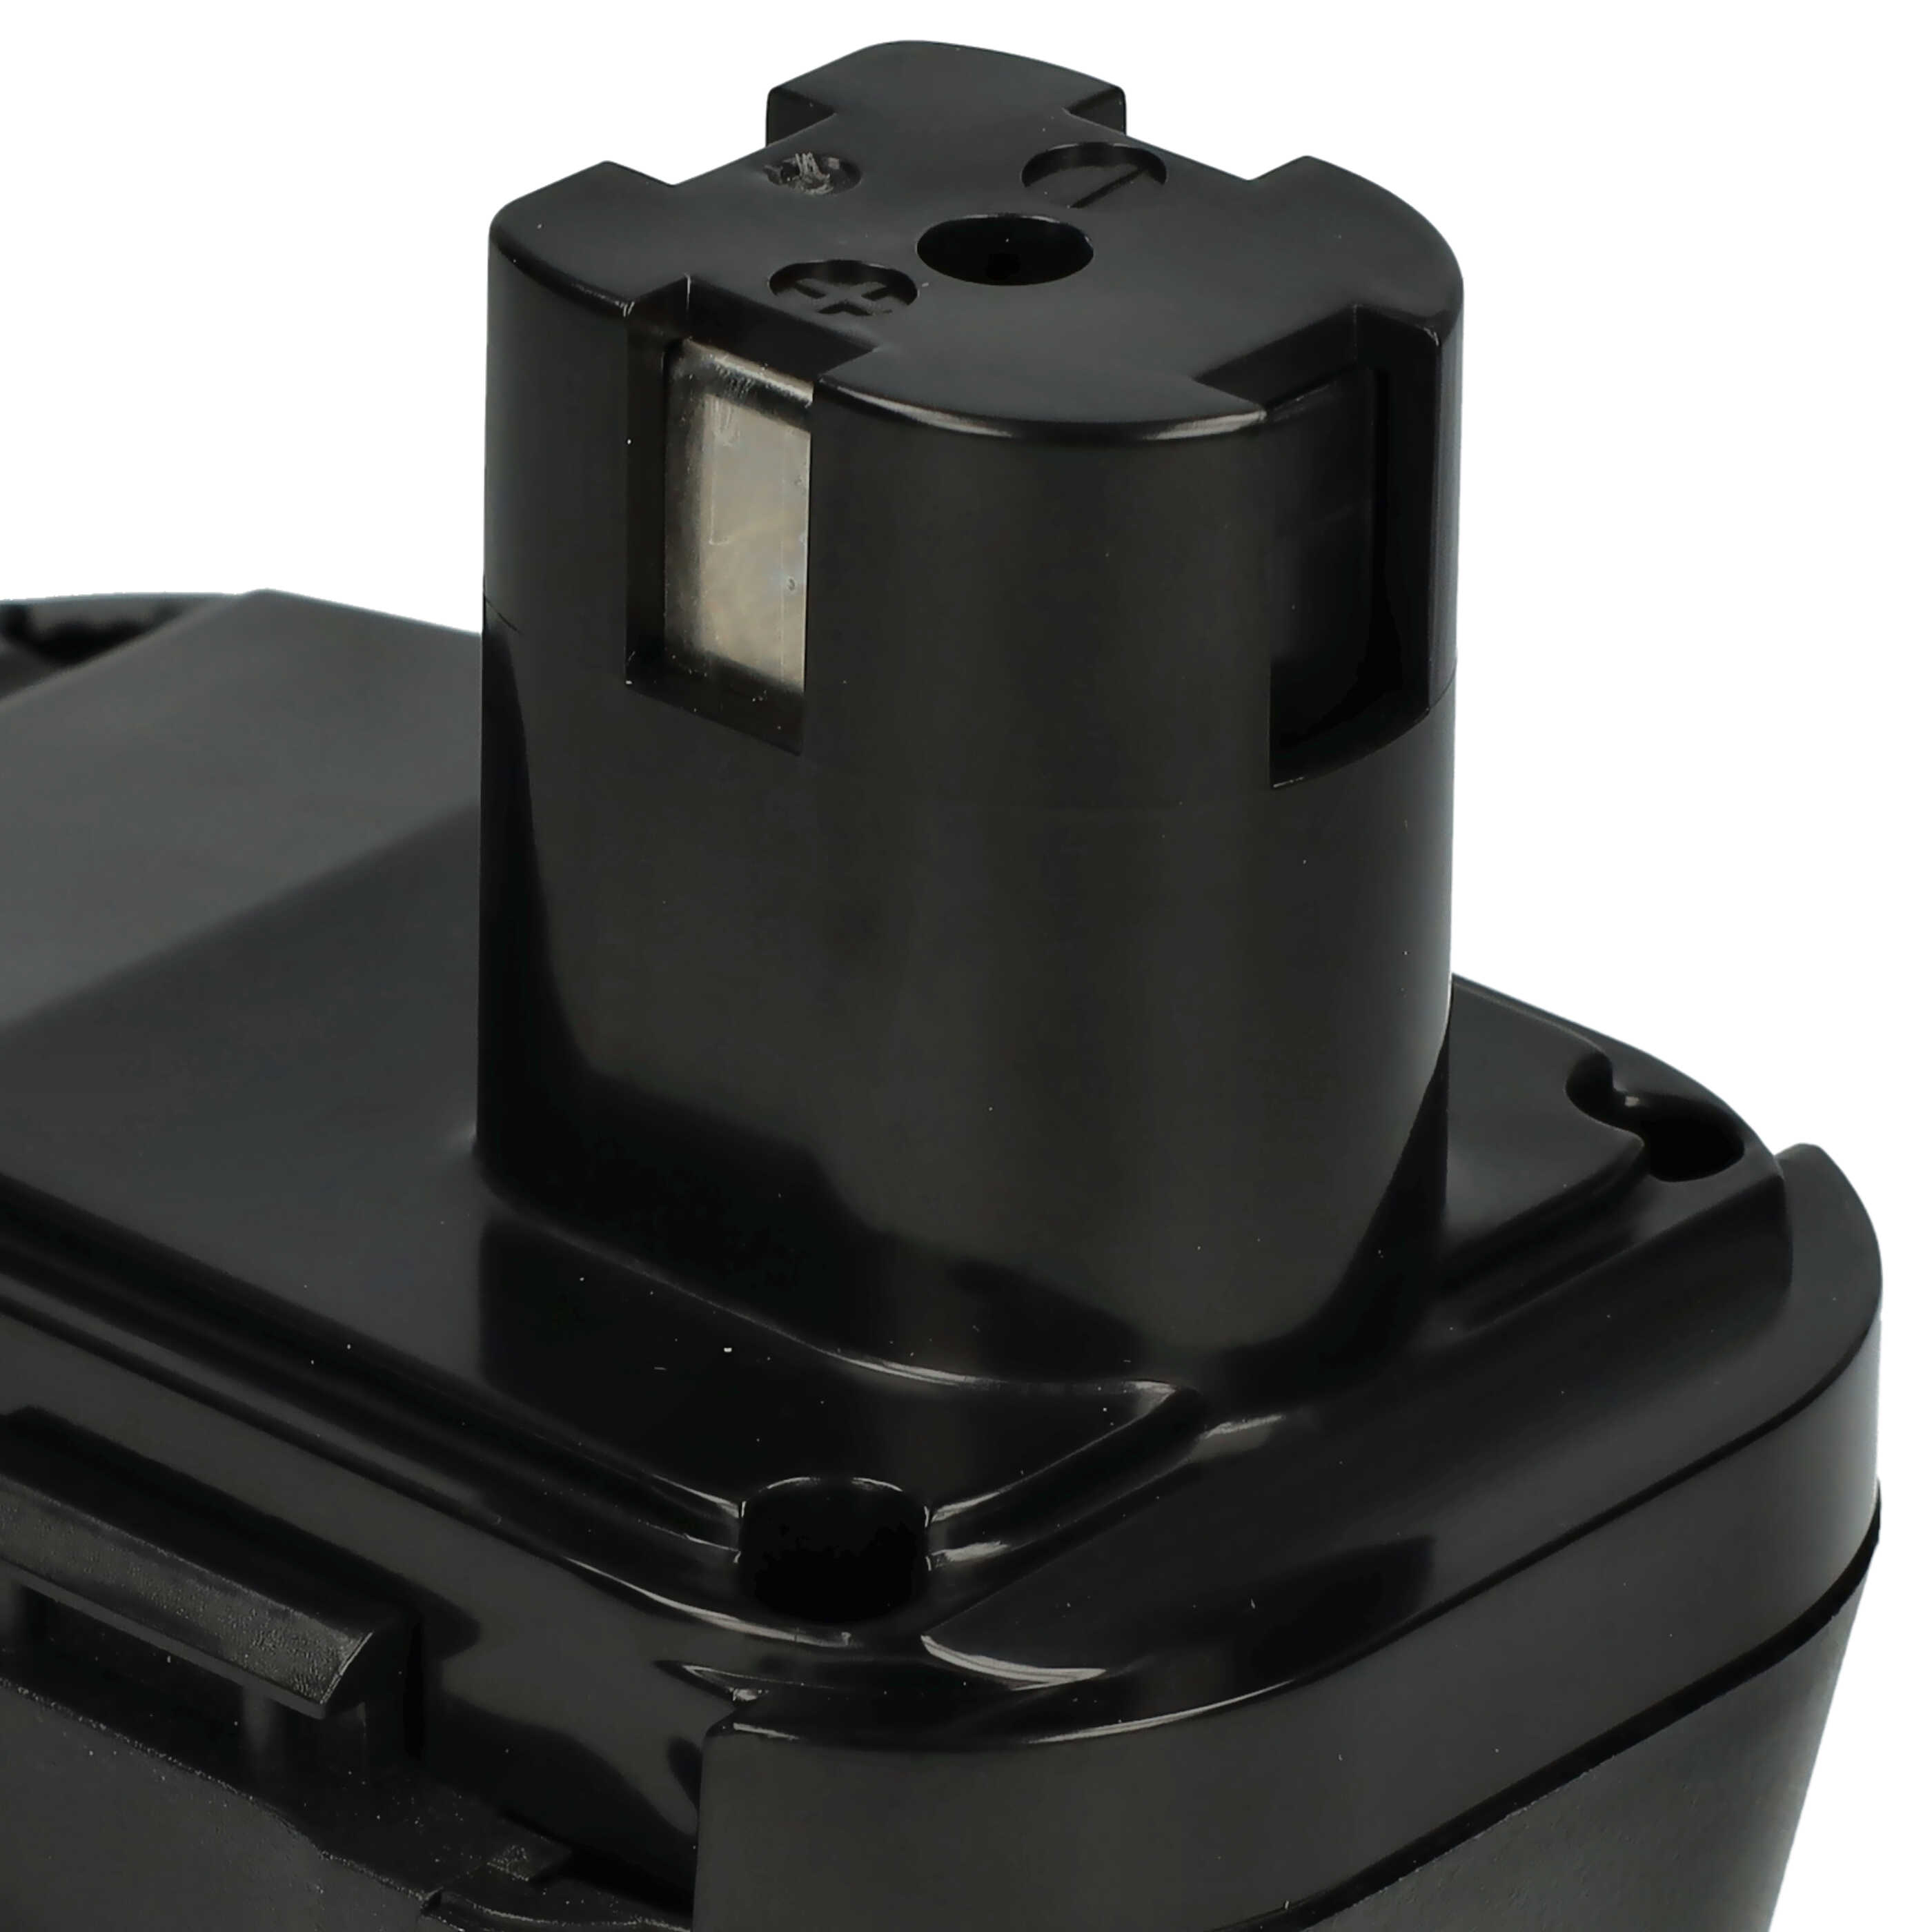 Batterie pour Einhell BT-CD 10.8/1 LI pour outil électrique - 2500 mAh, 10,8 V, Li-ion